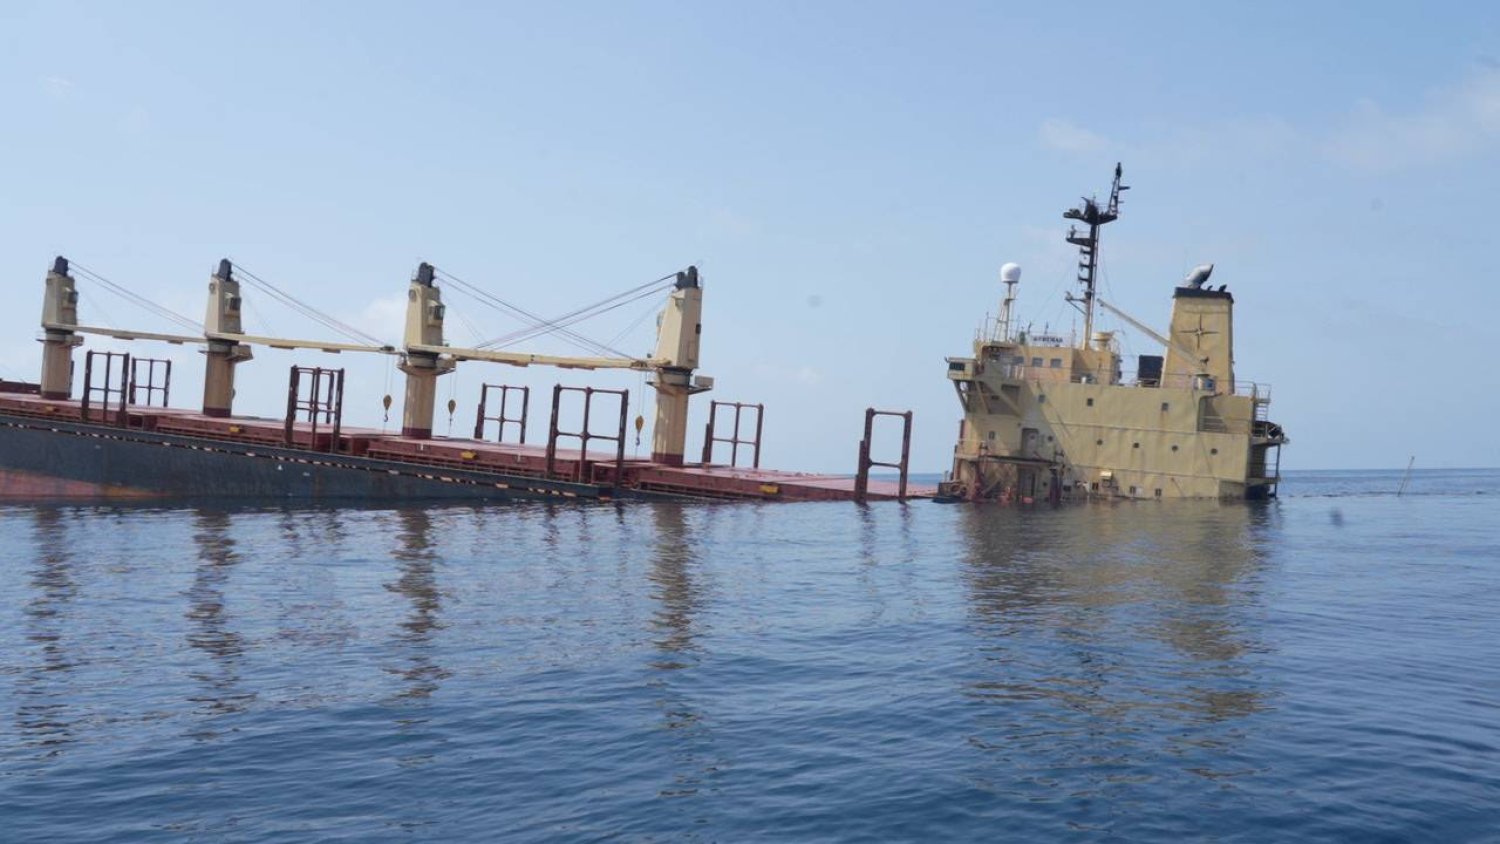 بعد استهدافها ..الحوثيون يغرقون أول سفينة وتحذيرات من "كارثة"